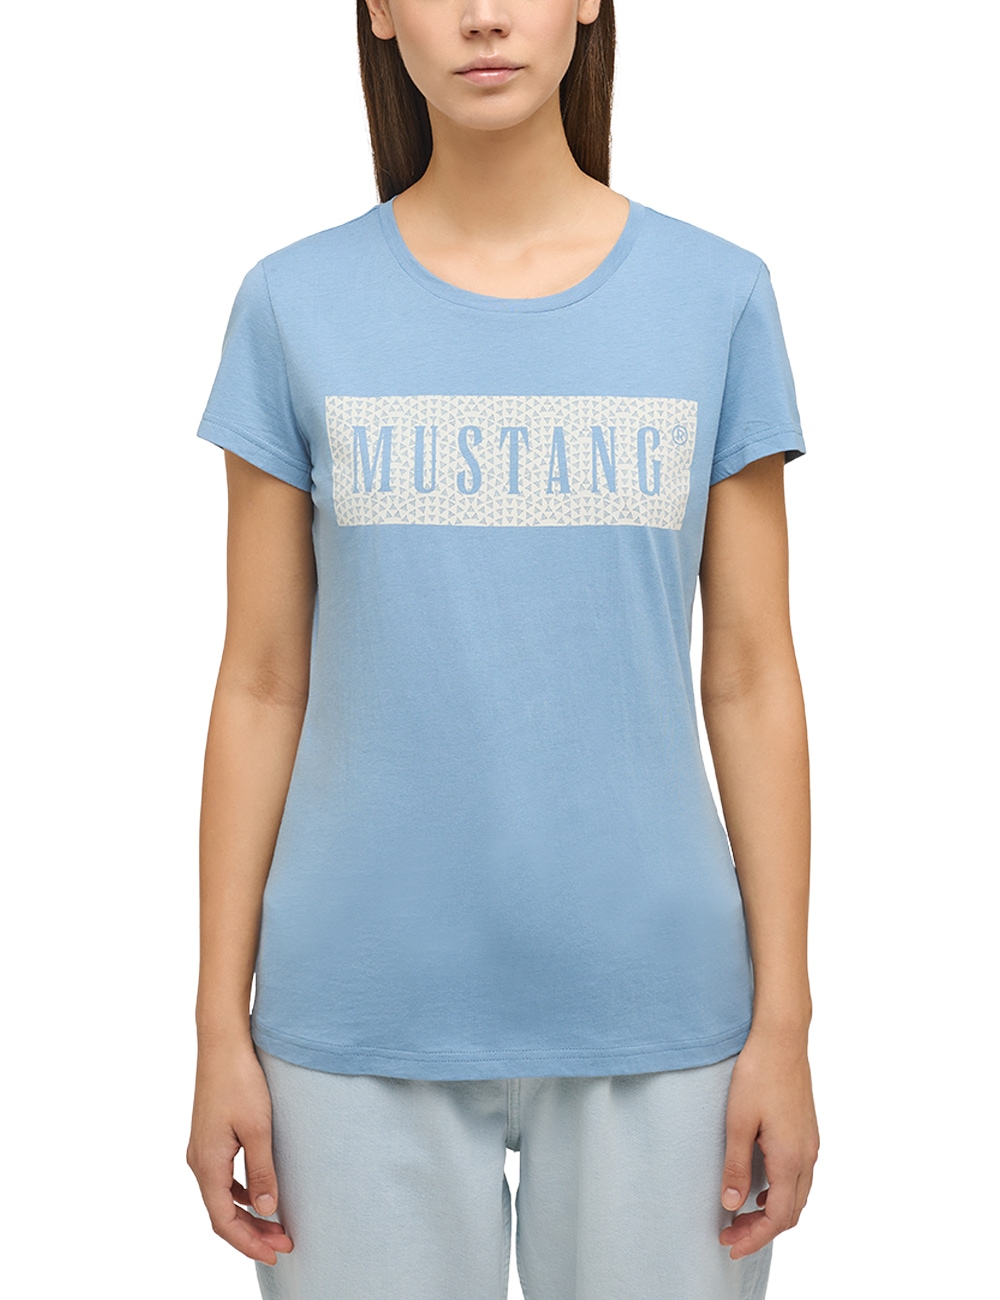 MUSTANG Kurzarmshirt »Mustang Print-Shirt« bestellen OTTO bei